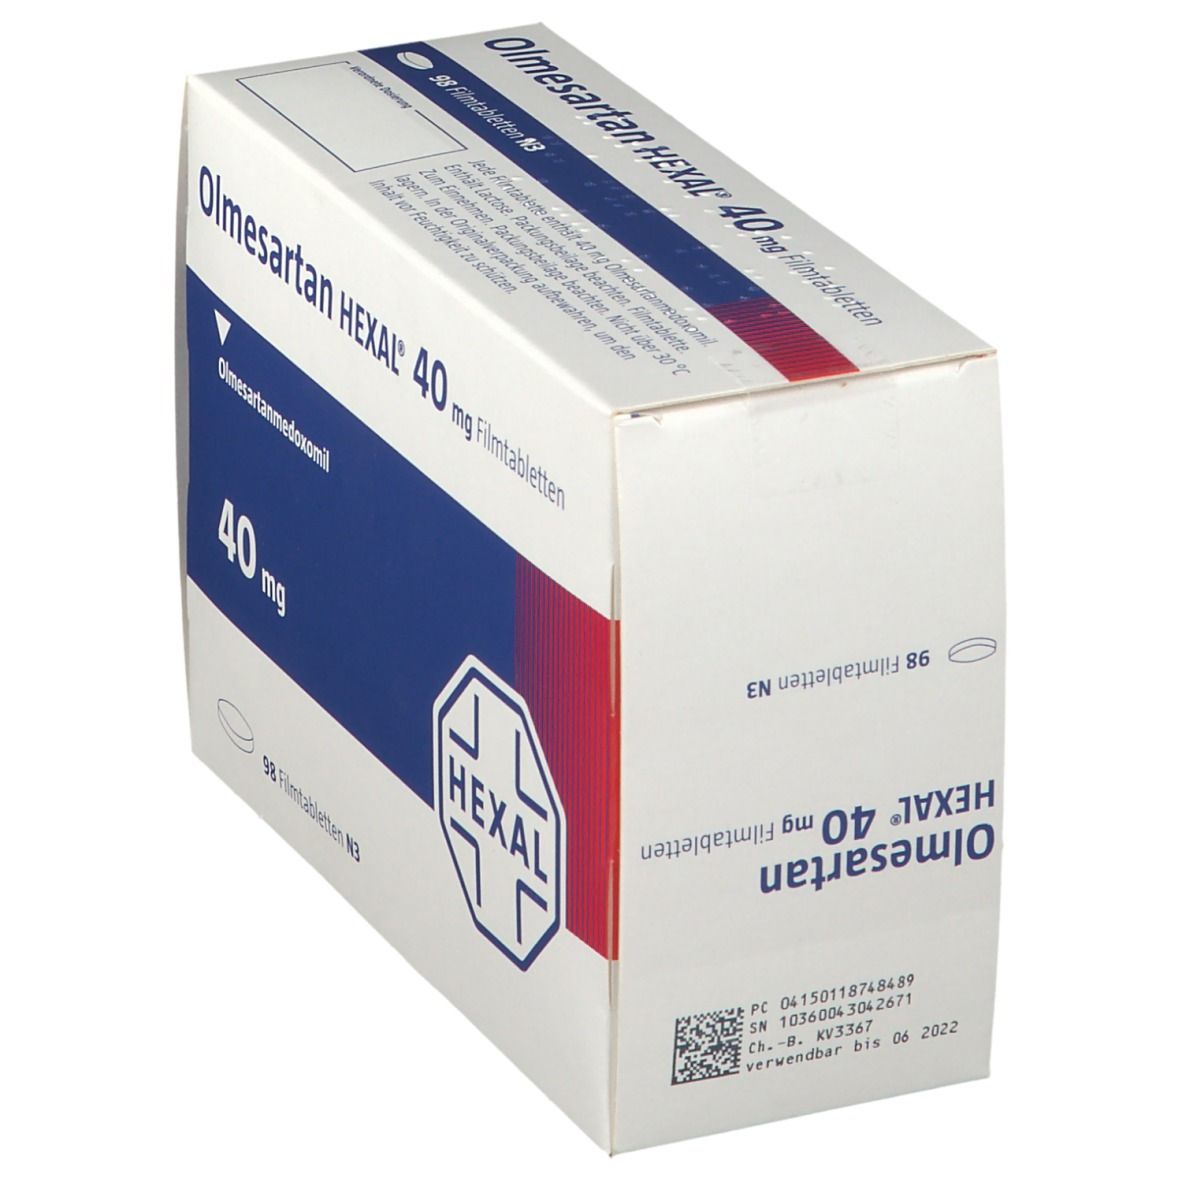 Olmesartan HEXAL® 40 mg